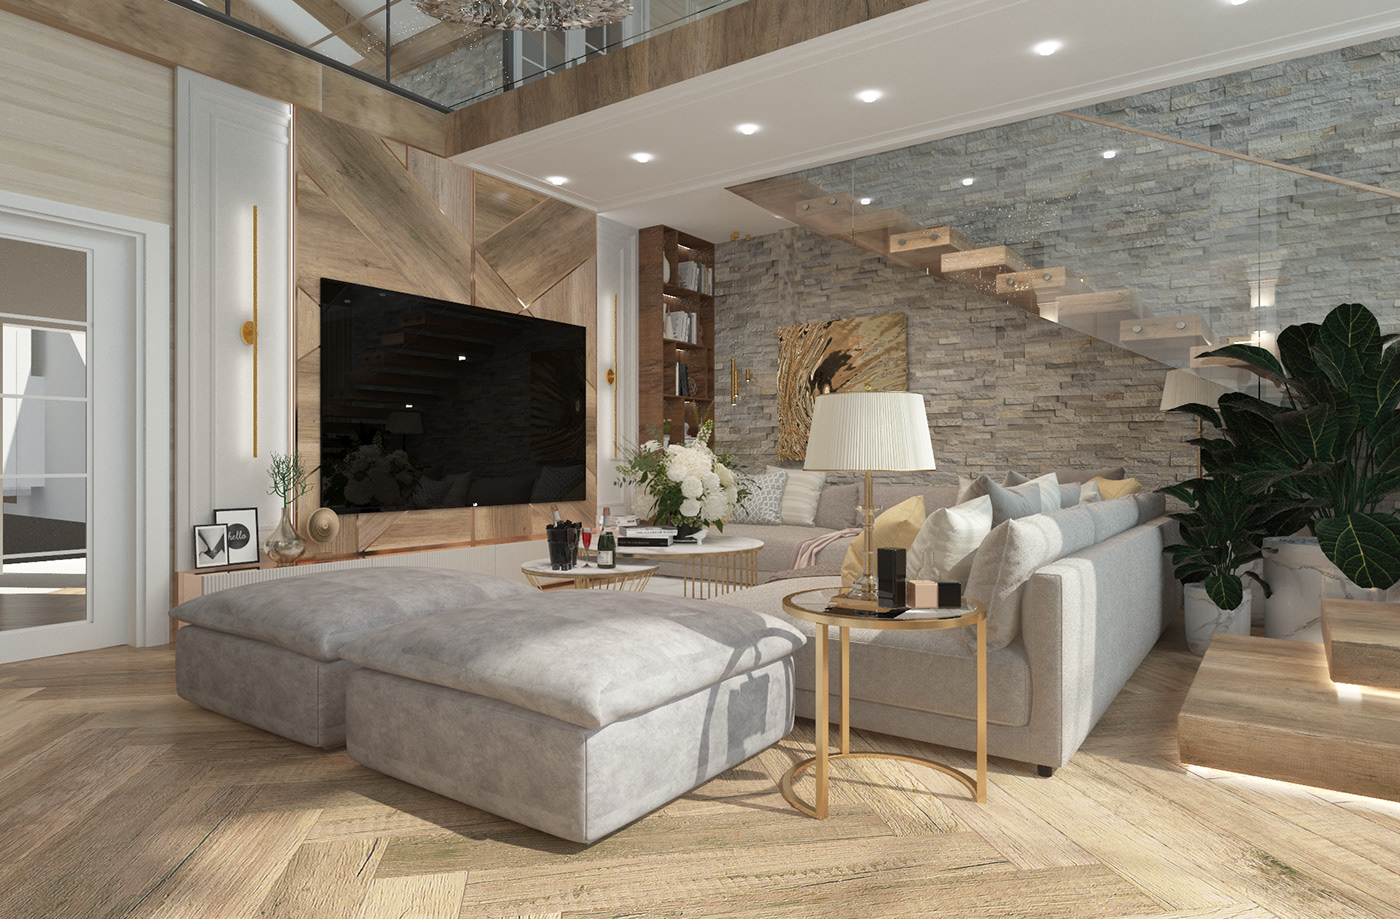 Interior interior design  interiordesign living room design Render visualization